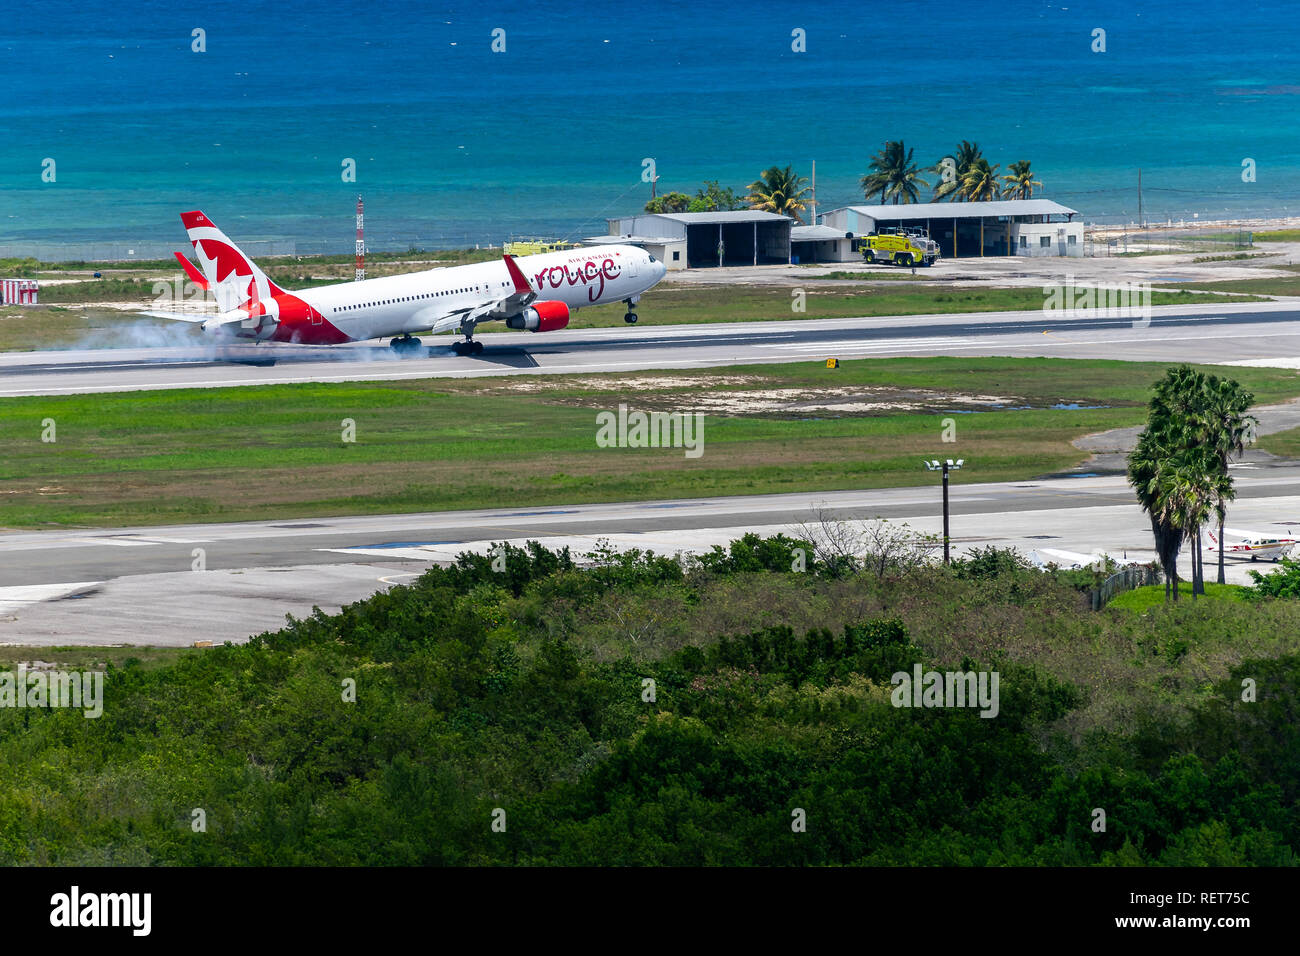 En Montego Bay, Jamaica, el 27 de marzo de 2015: Air Canada aviones que aterrizan en el Aeropuerto Internacional Sangster (MBJ) en Montego Bay, Jamaica Foto de stock